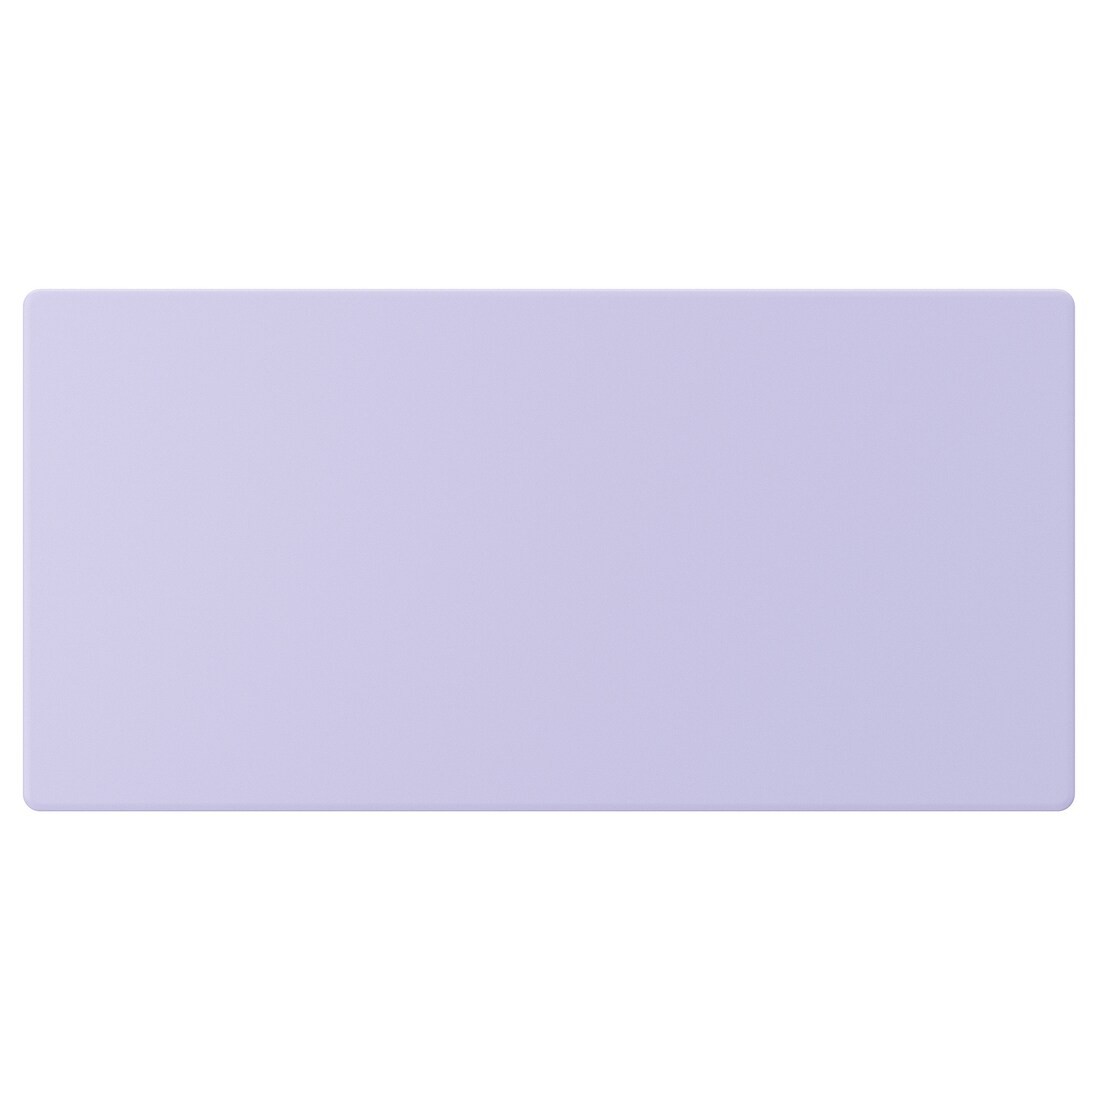 SMÅSTAD Фронтальная панель ящика, бледно-фиолетовый, 60x30 см